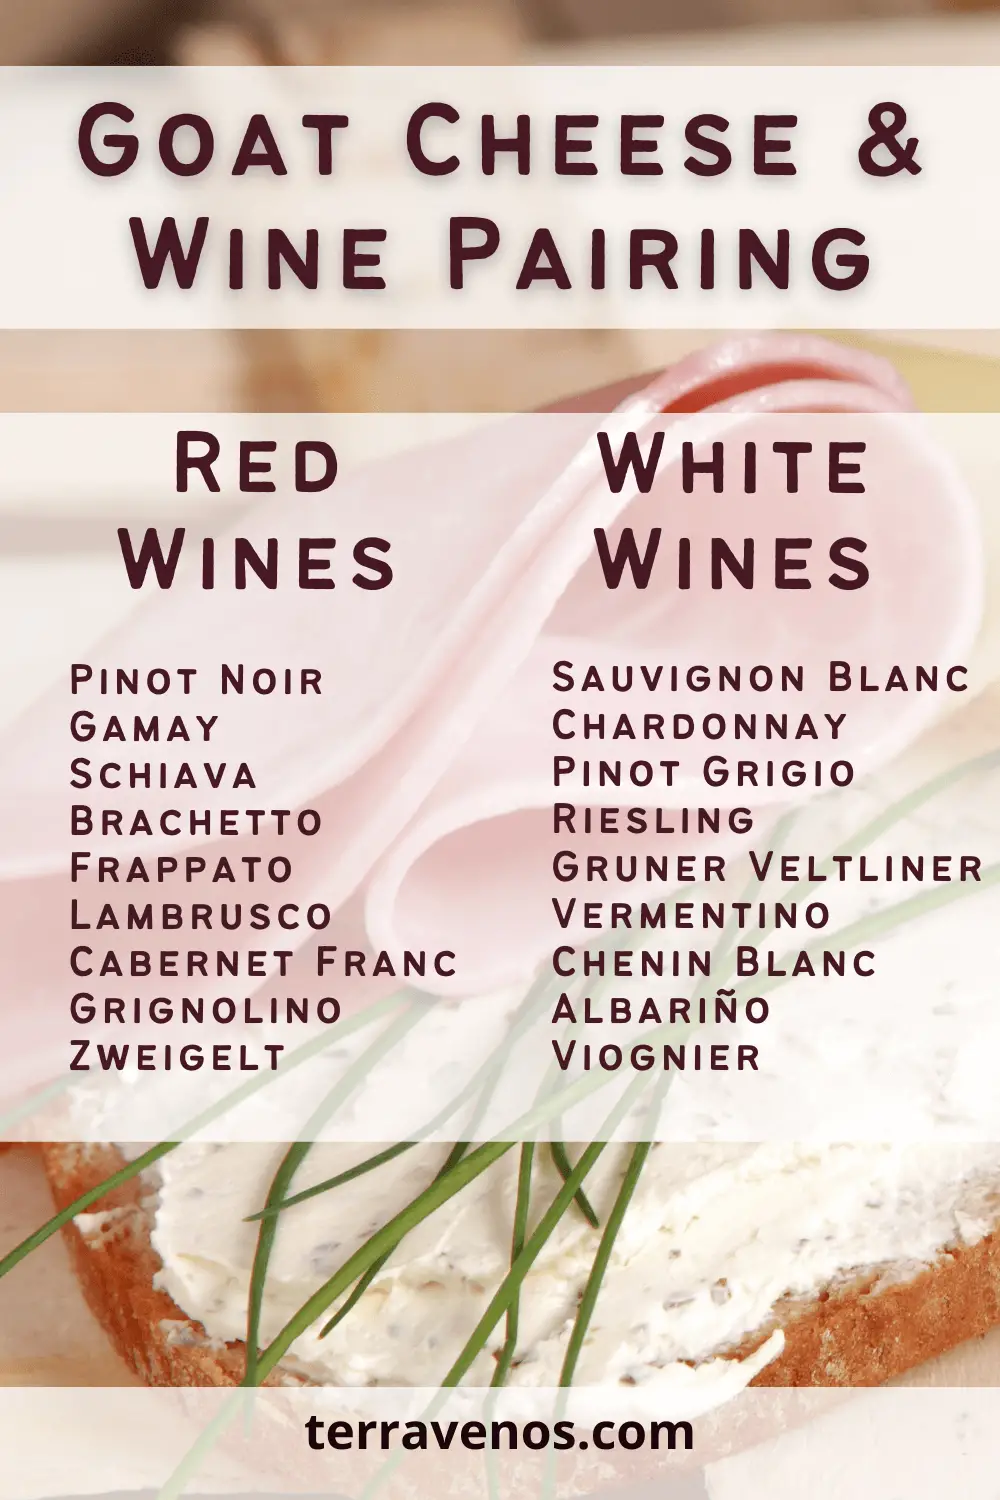 goat-cheese-wine-pairing-infographic